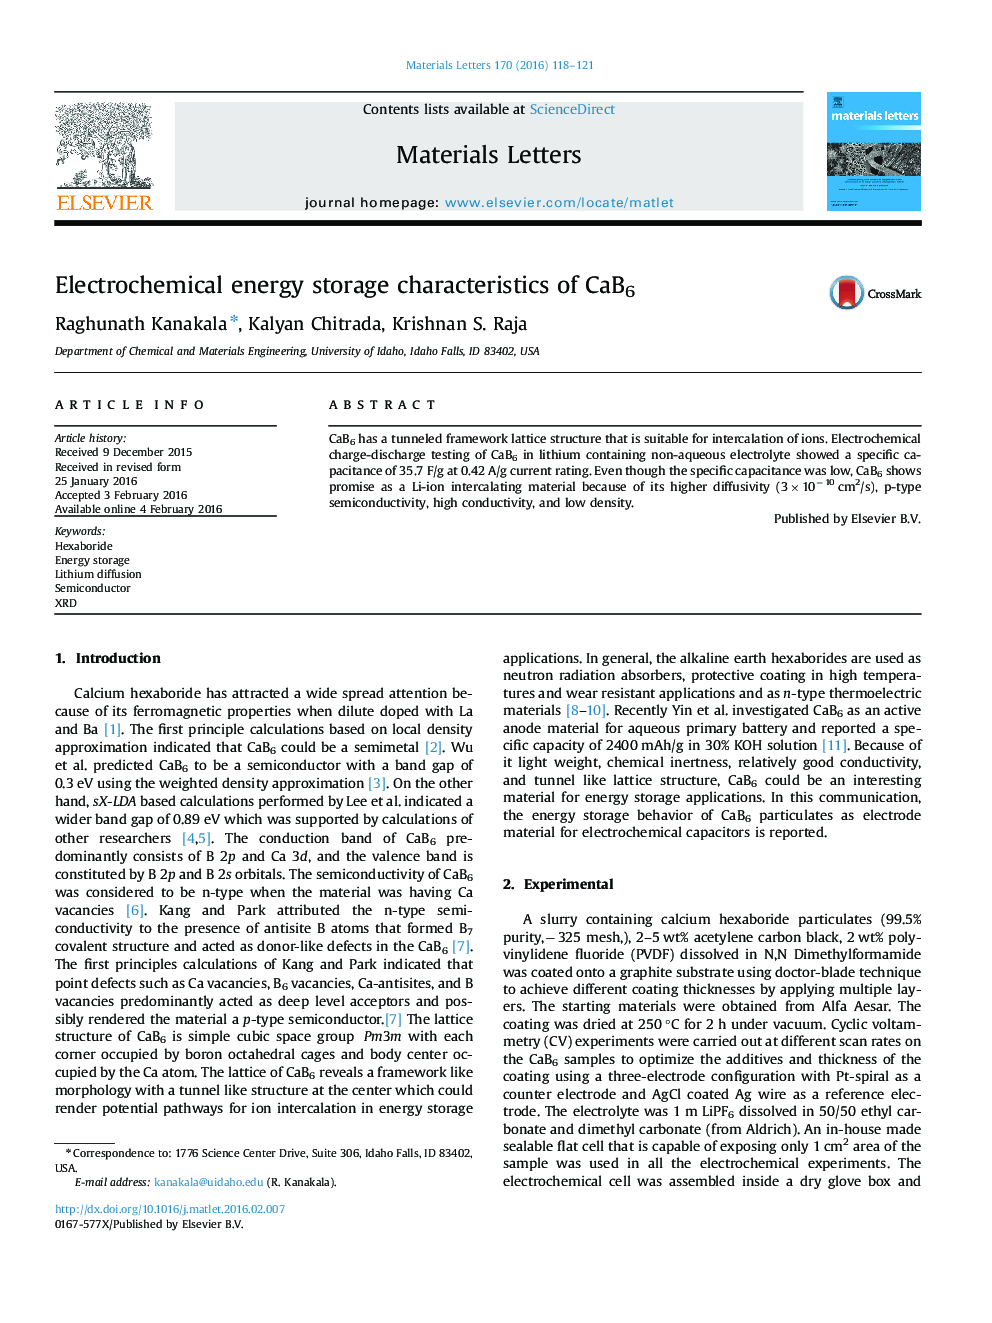 خصوصیات ذخیره سازی انرژی الکتروشیمیایی CaB6